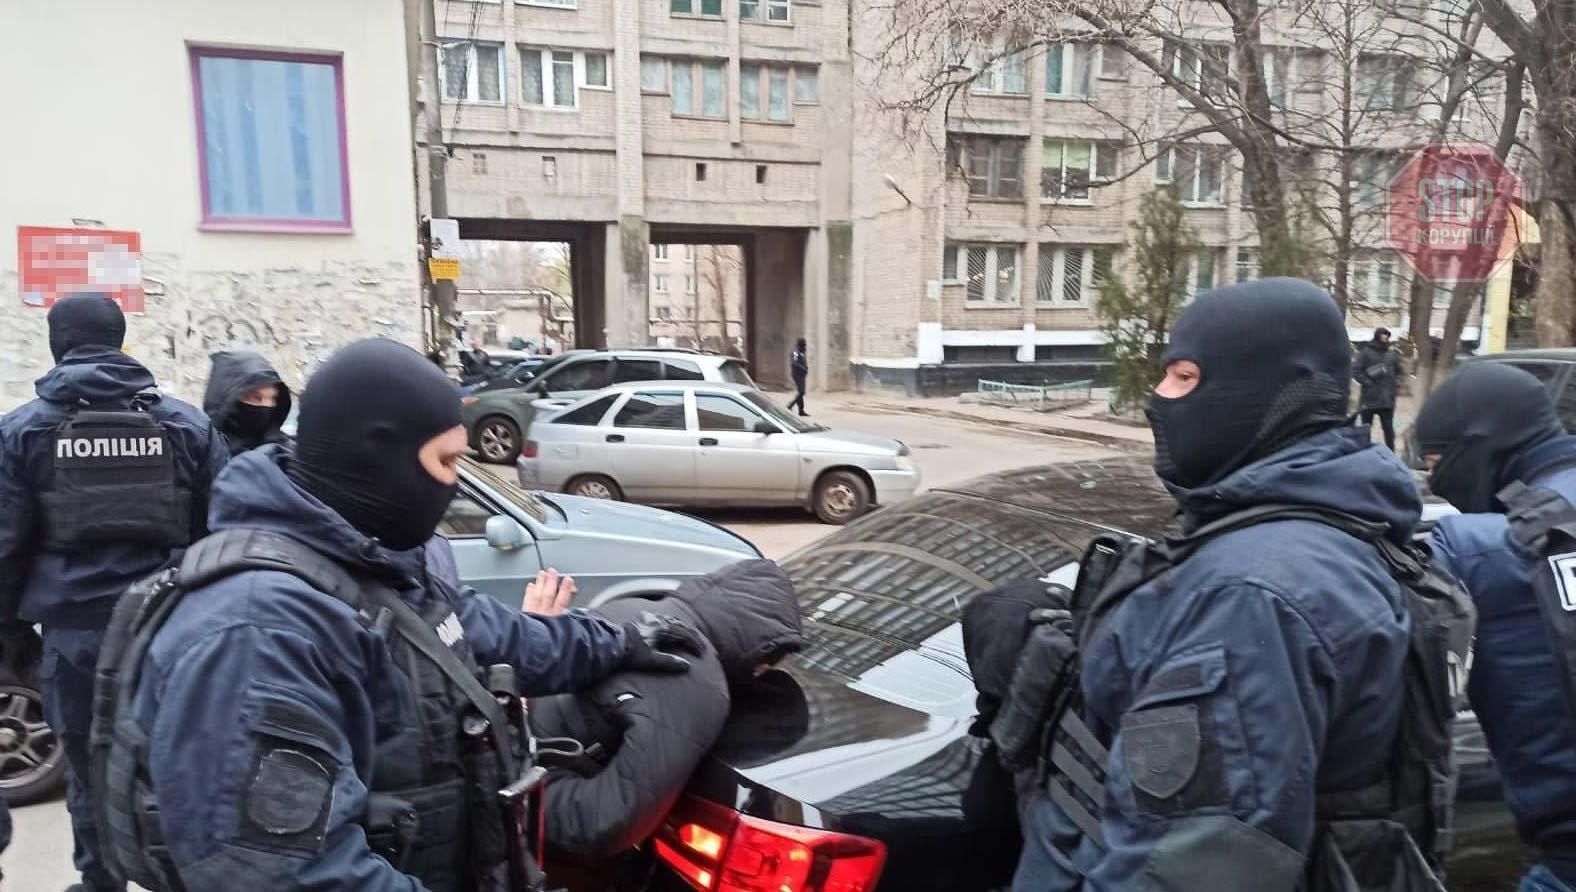  У Дніпрі поліцейські затримали озброєну злочинну групу Фото: Нацполіція